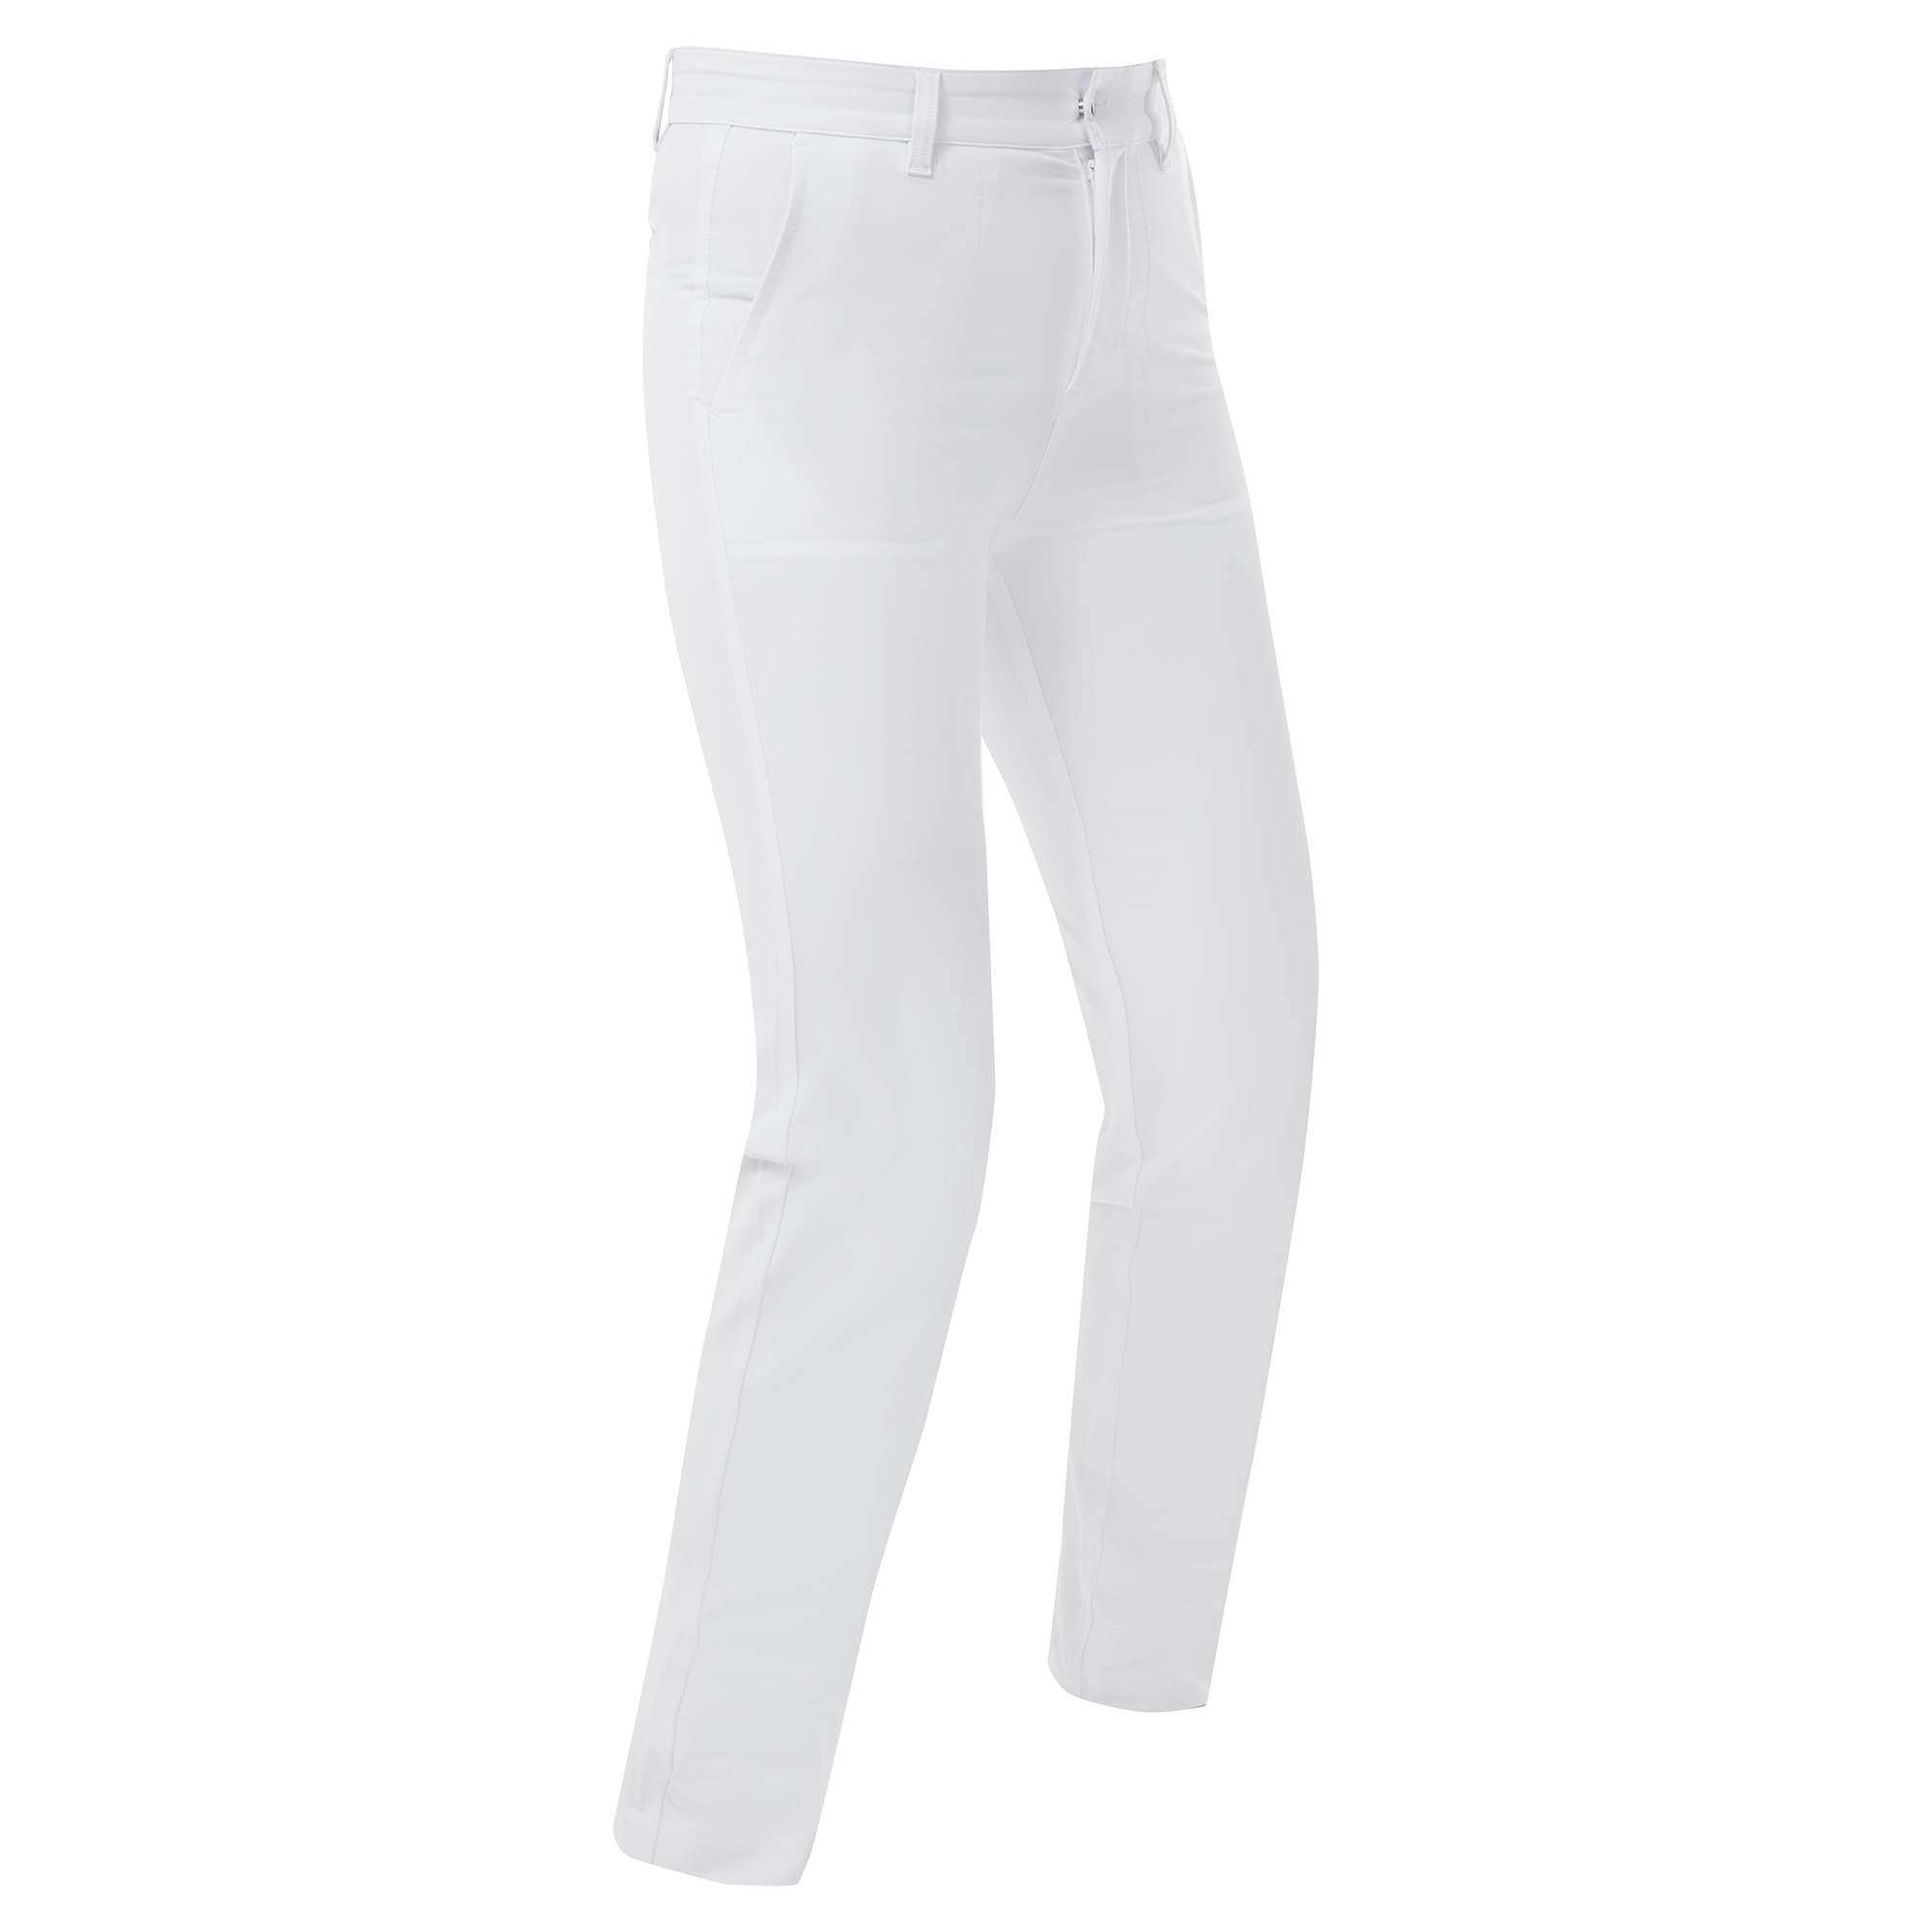 FootJoy Stretch dámské golfové kalhoty, bílé, vel. M